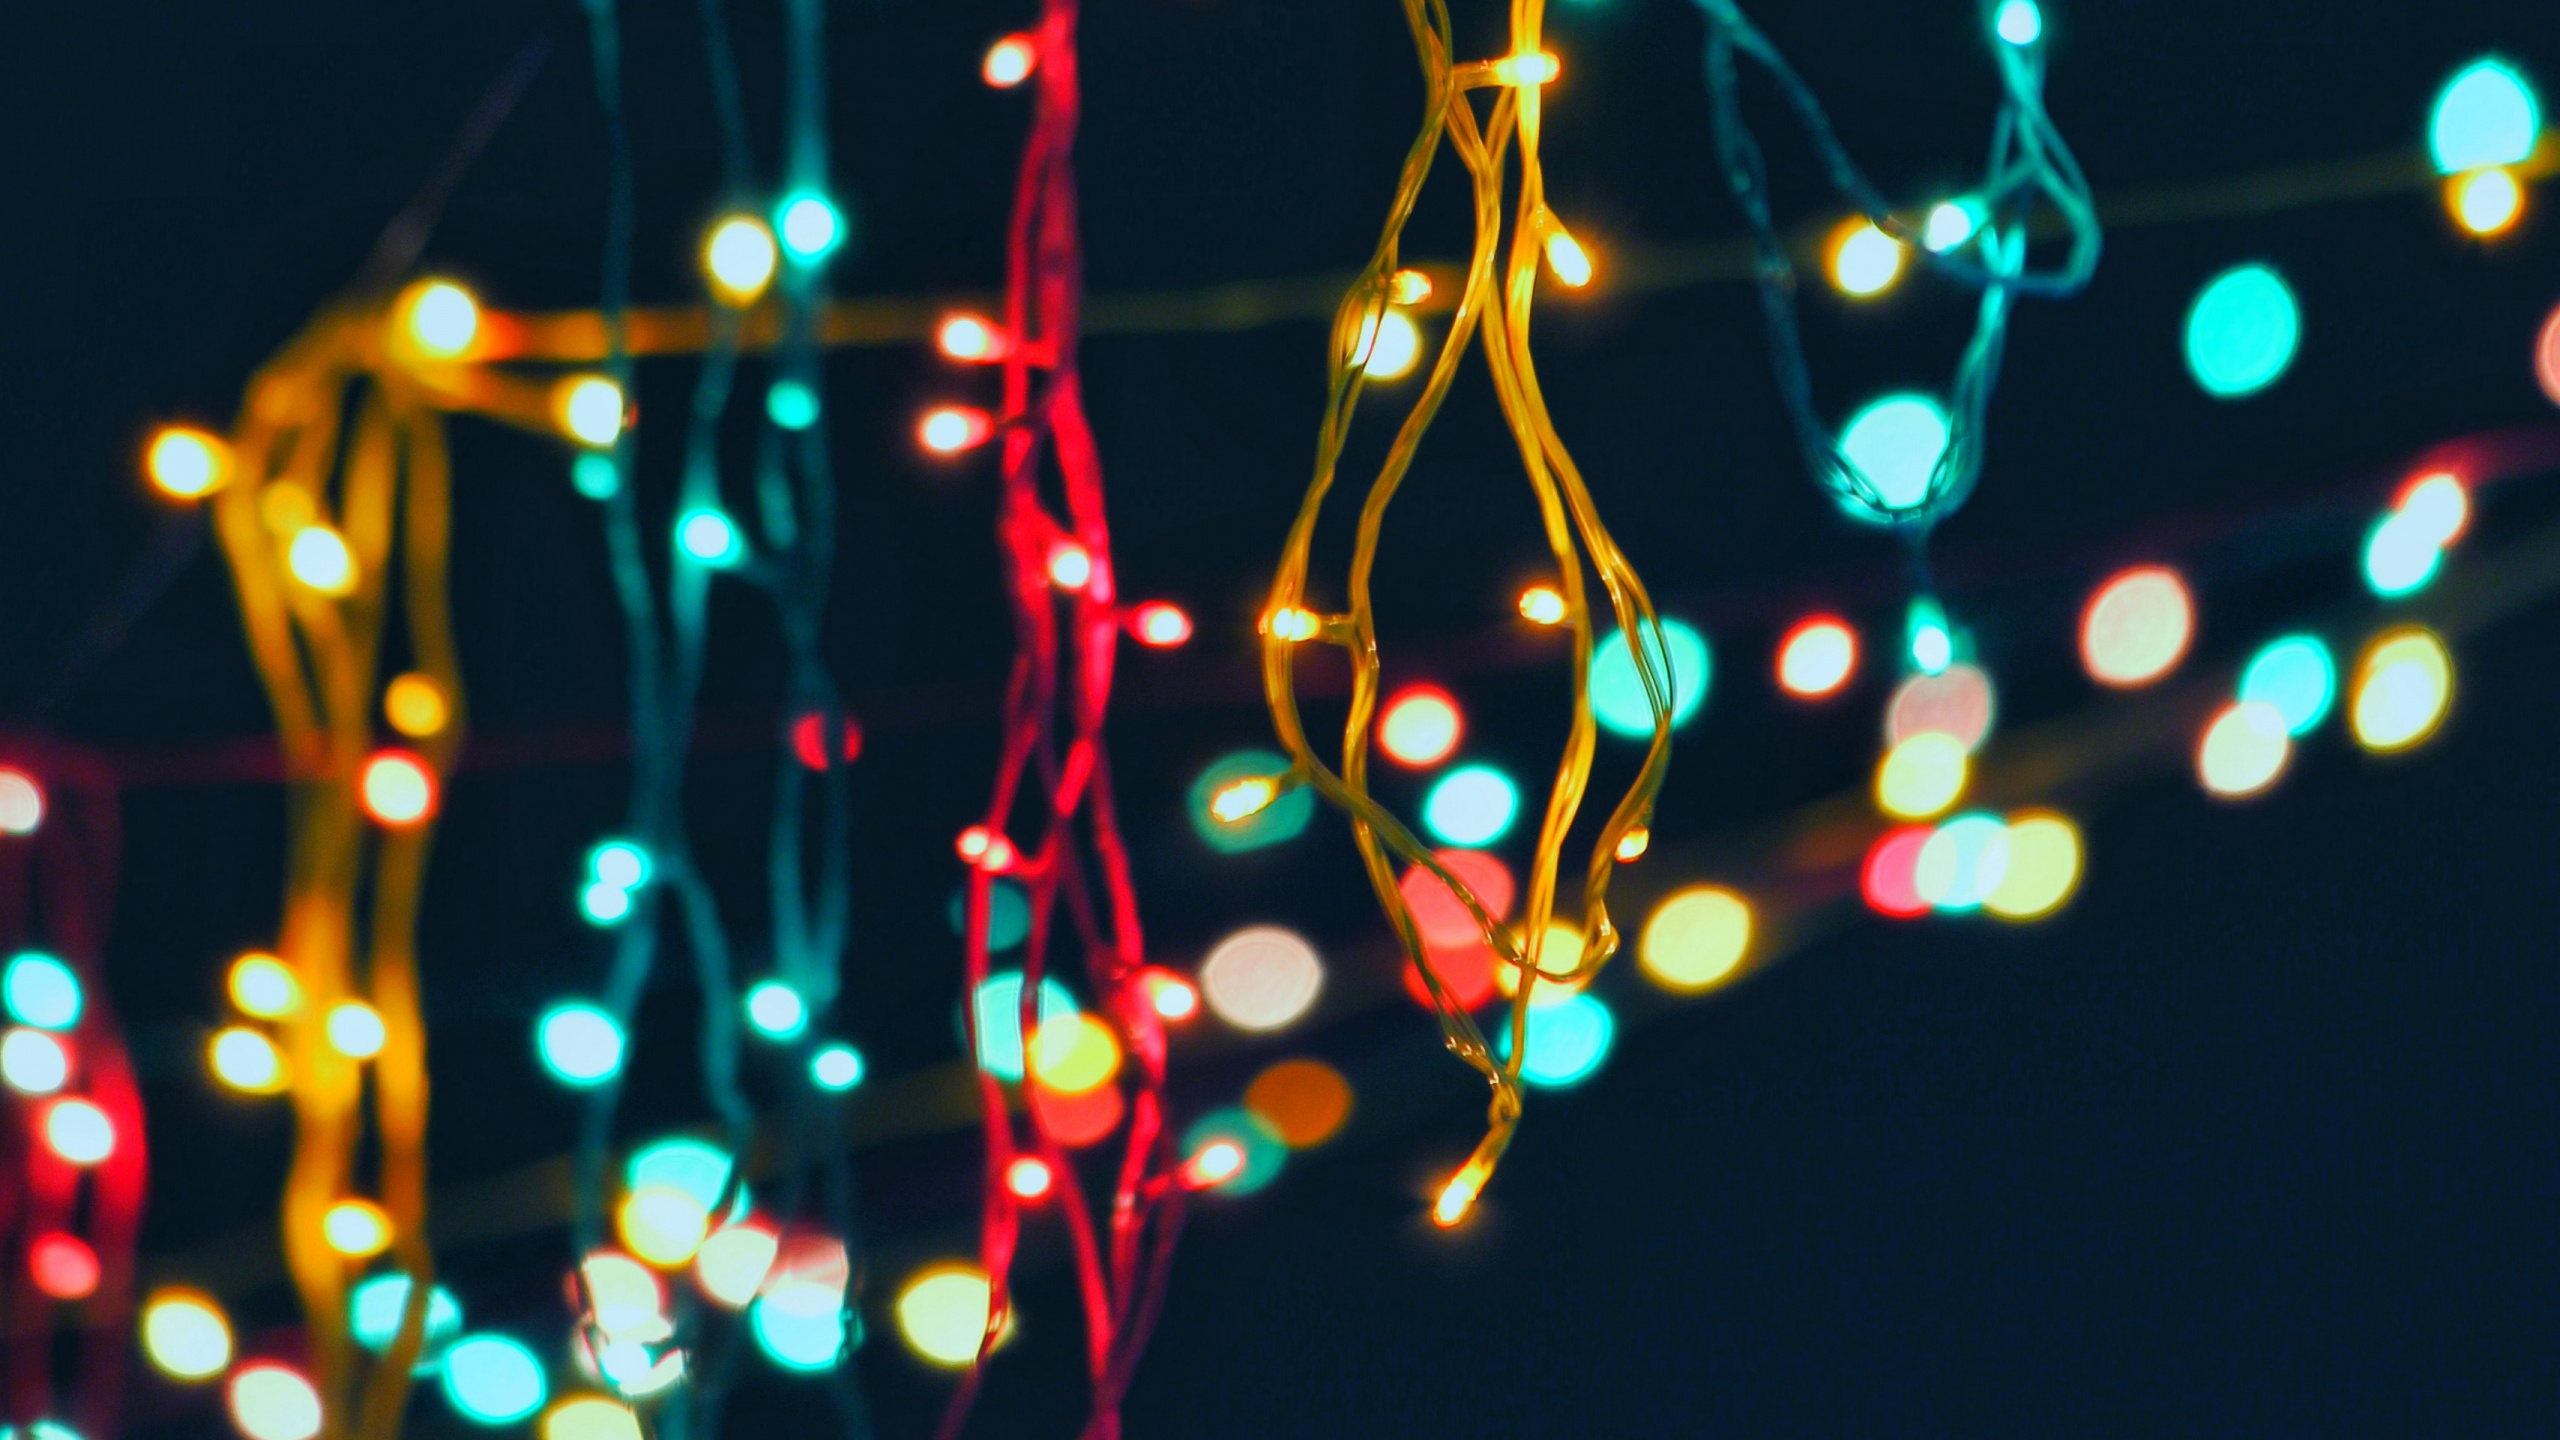 Les Lumières de Noël, Éclairage, Nuit, Lumière, Décoration de Noël. Wallpaper in 2560x1440 Resolution